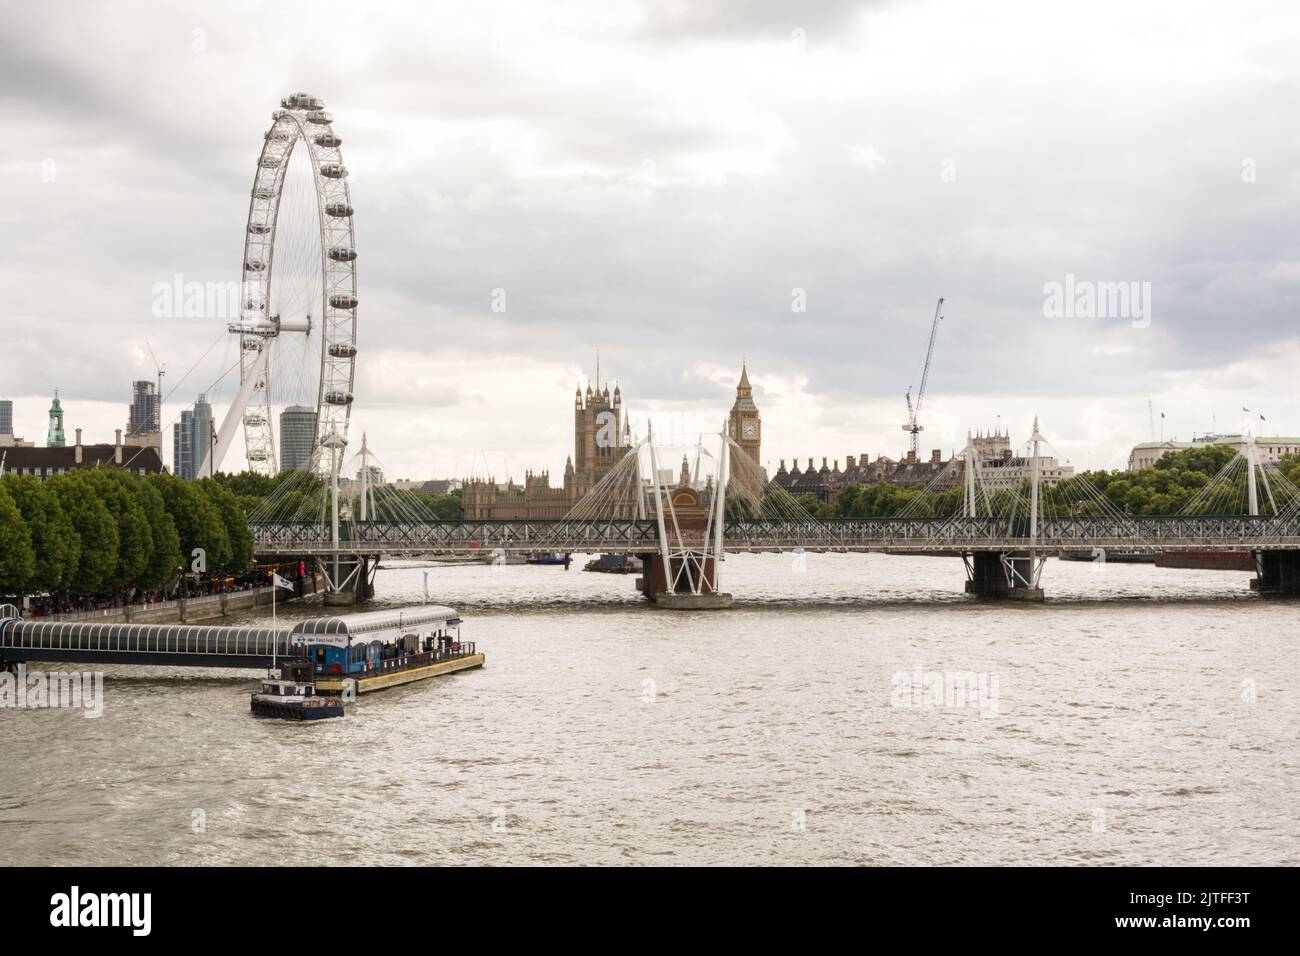 Le Parlement, le pont Hungerford et le Millenium Wheel vus du Waterloo Bridge, Londres, Angleterre, Royaume-Uni Banque D'Images